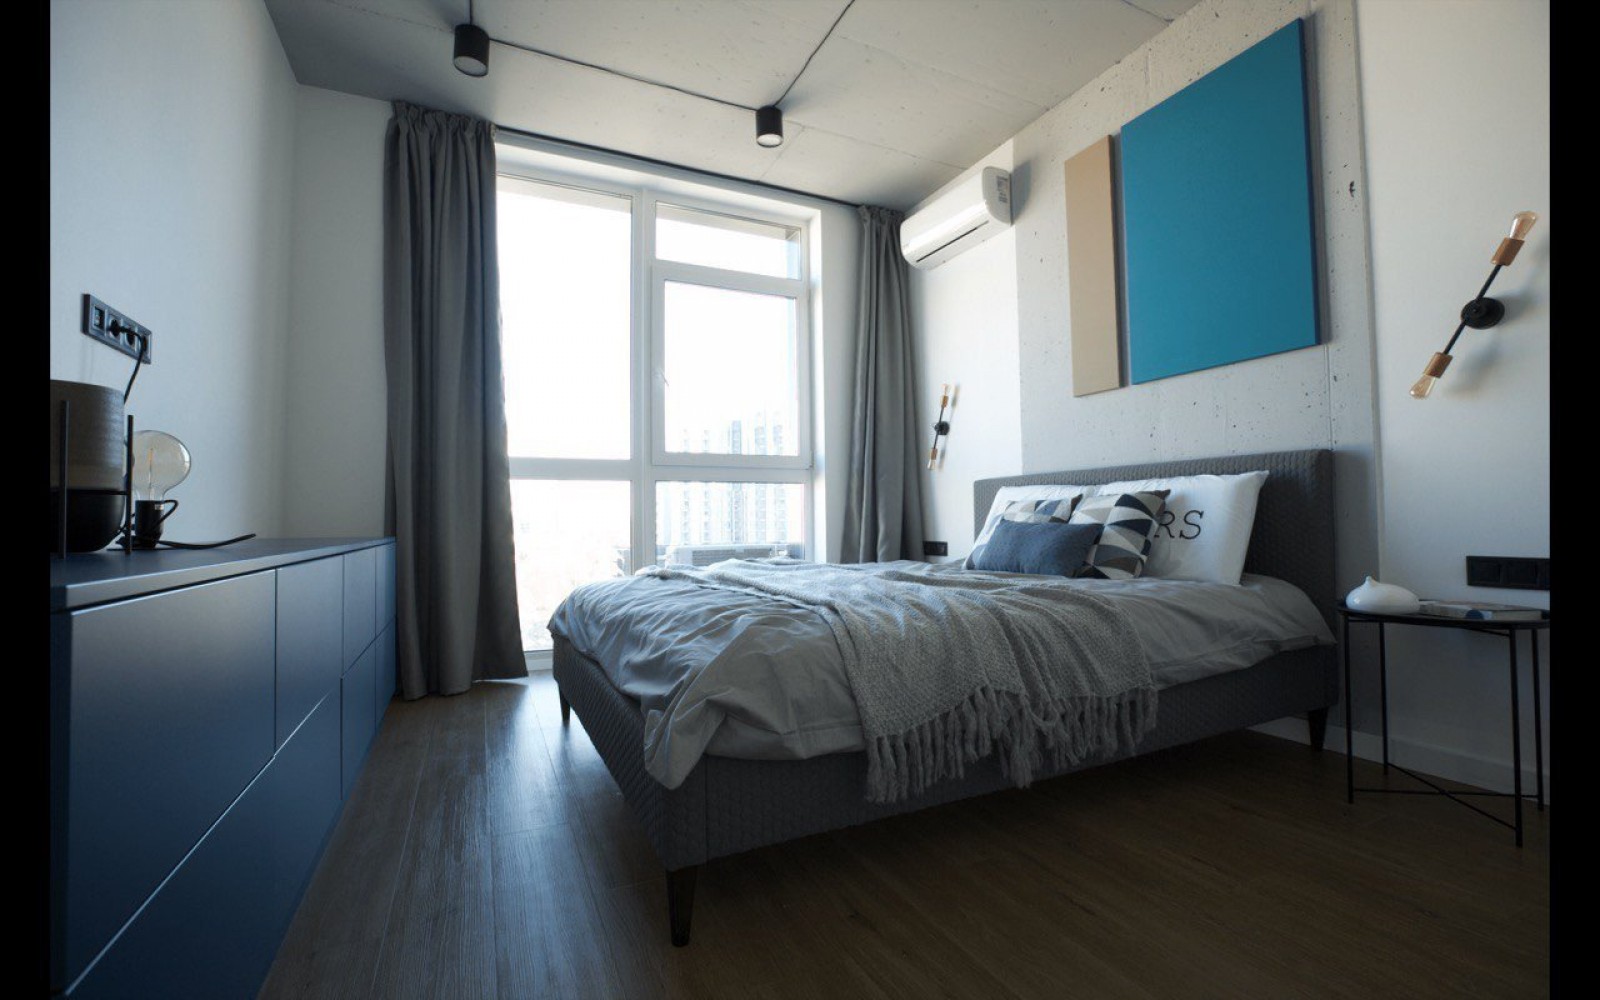 Спальня в дизайн-проекте 1-комнатной квартиры в ЖК Французкий квартал — 62м.кв. — Between the walls